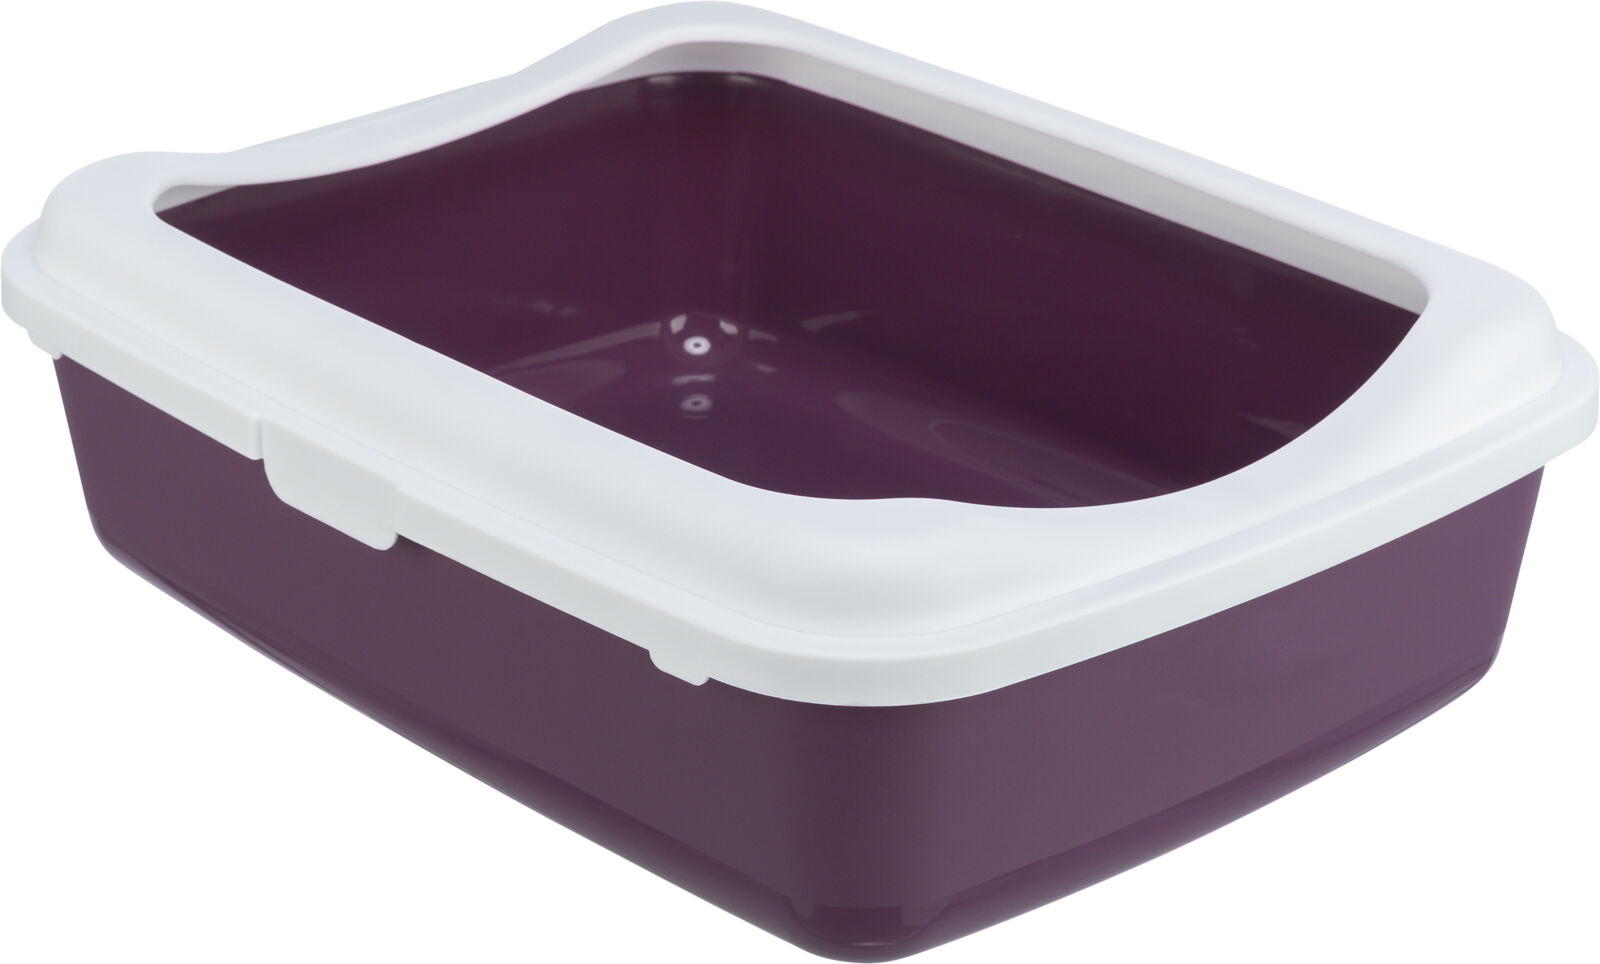 Kočičí WC Classic s odnímatelným okrajem Barva: tmavě fialová